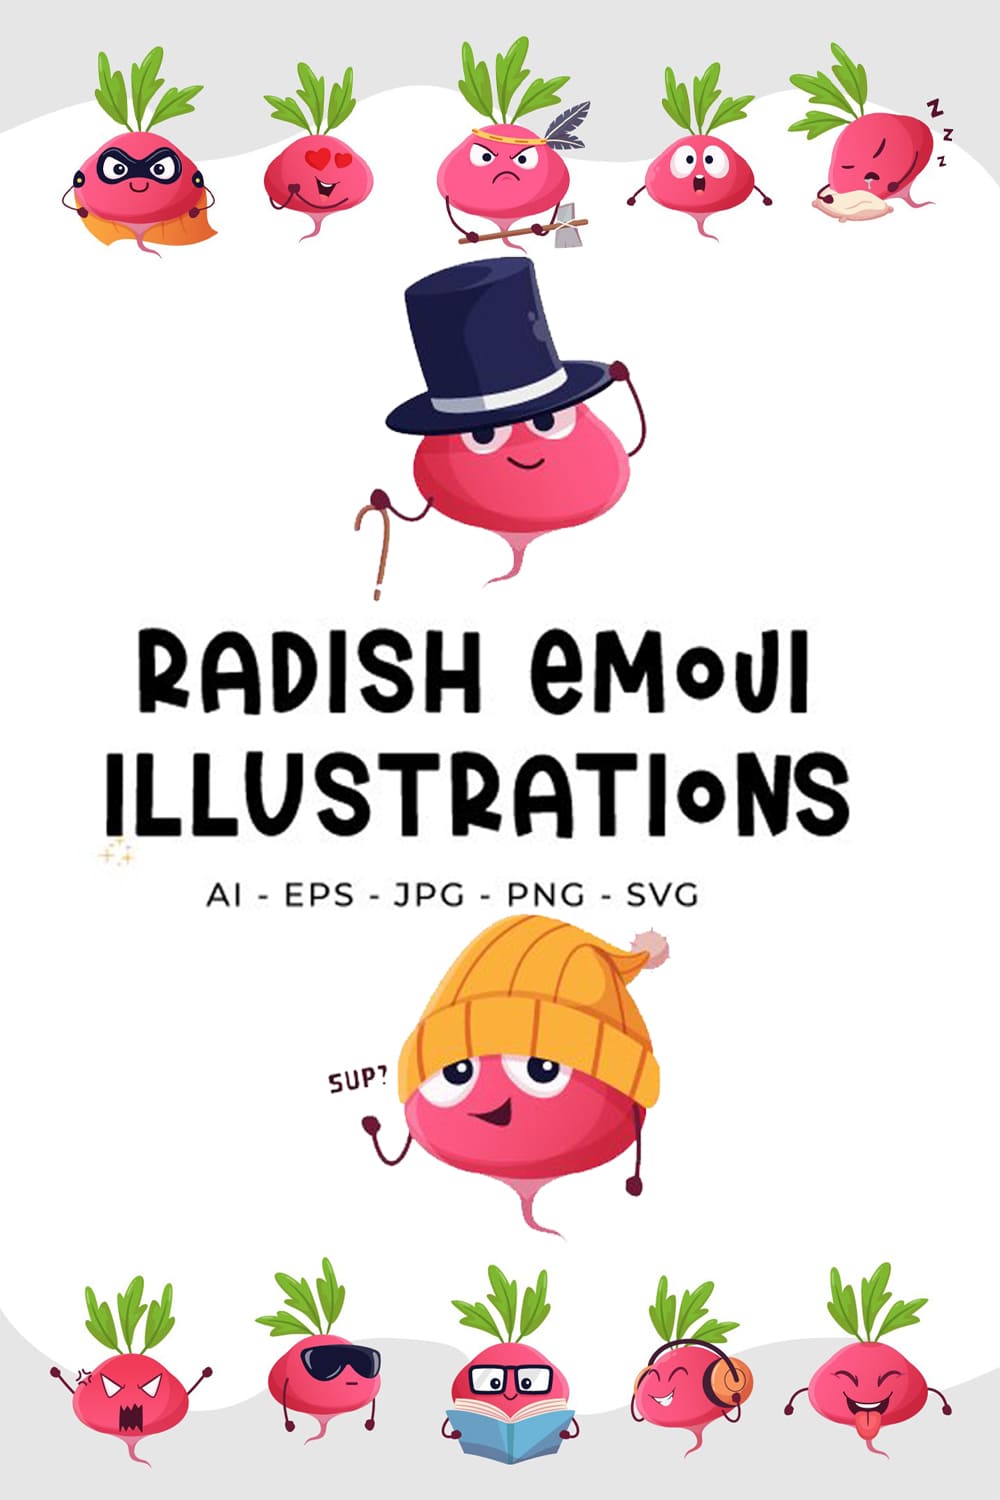 1487560 radish emoji illustrations pinterest 1000 1500